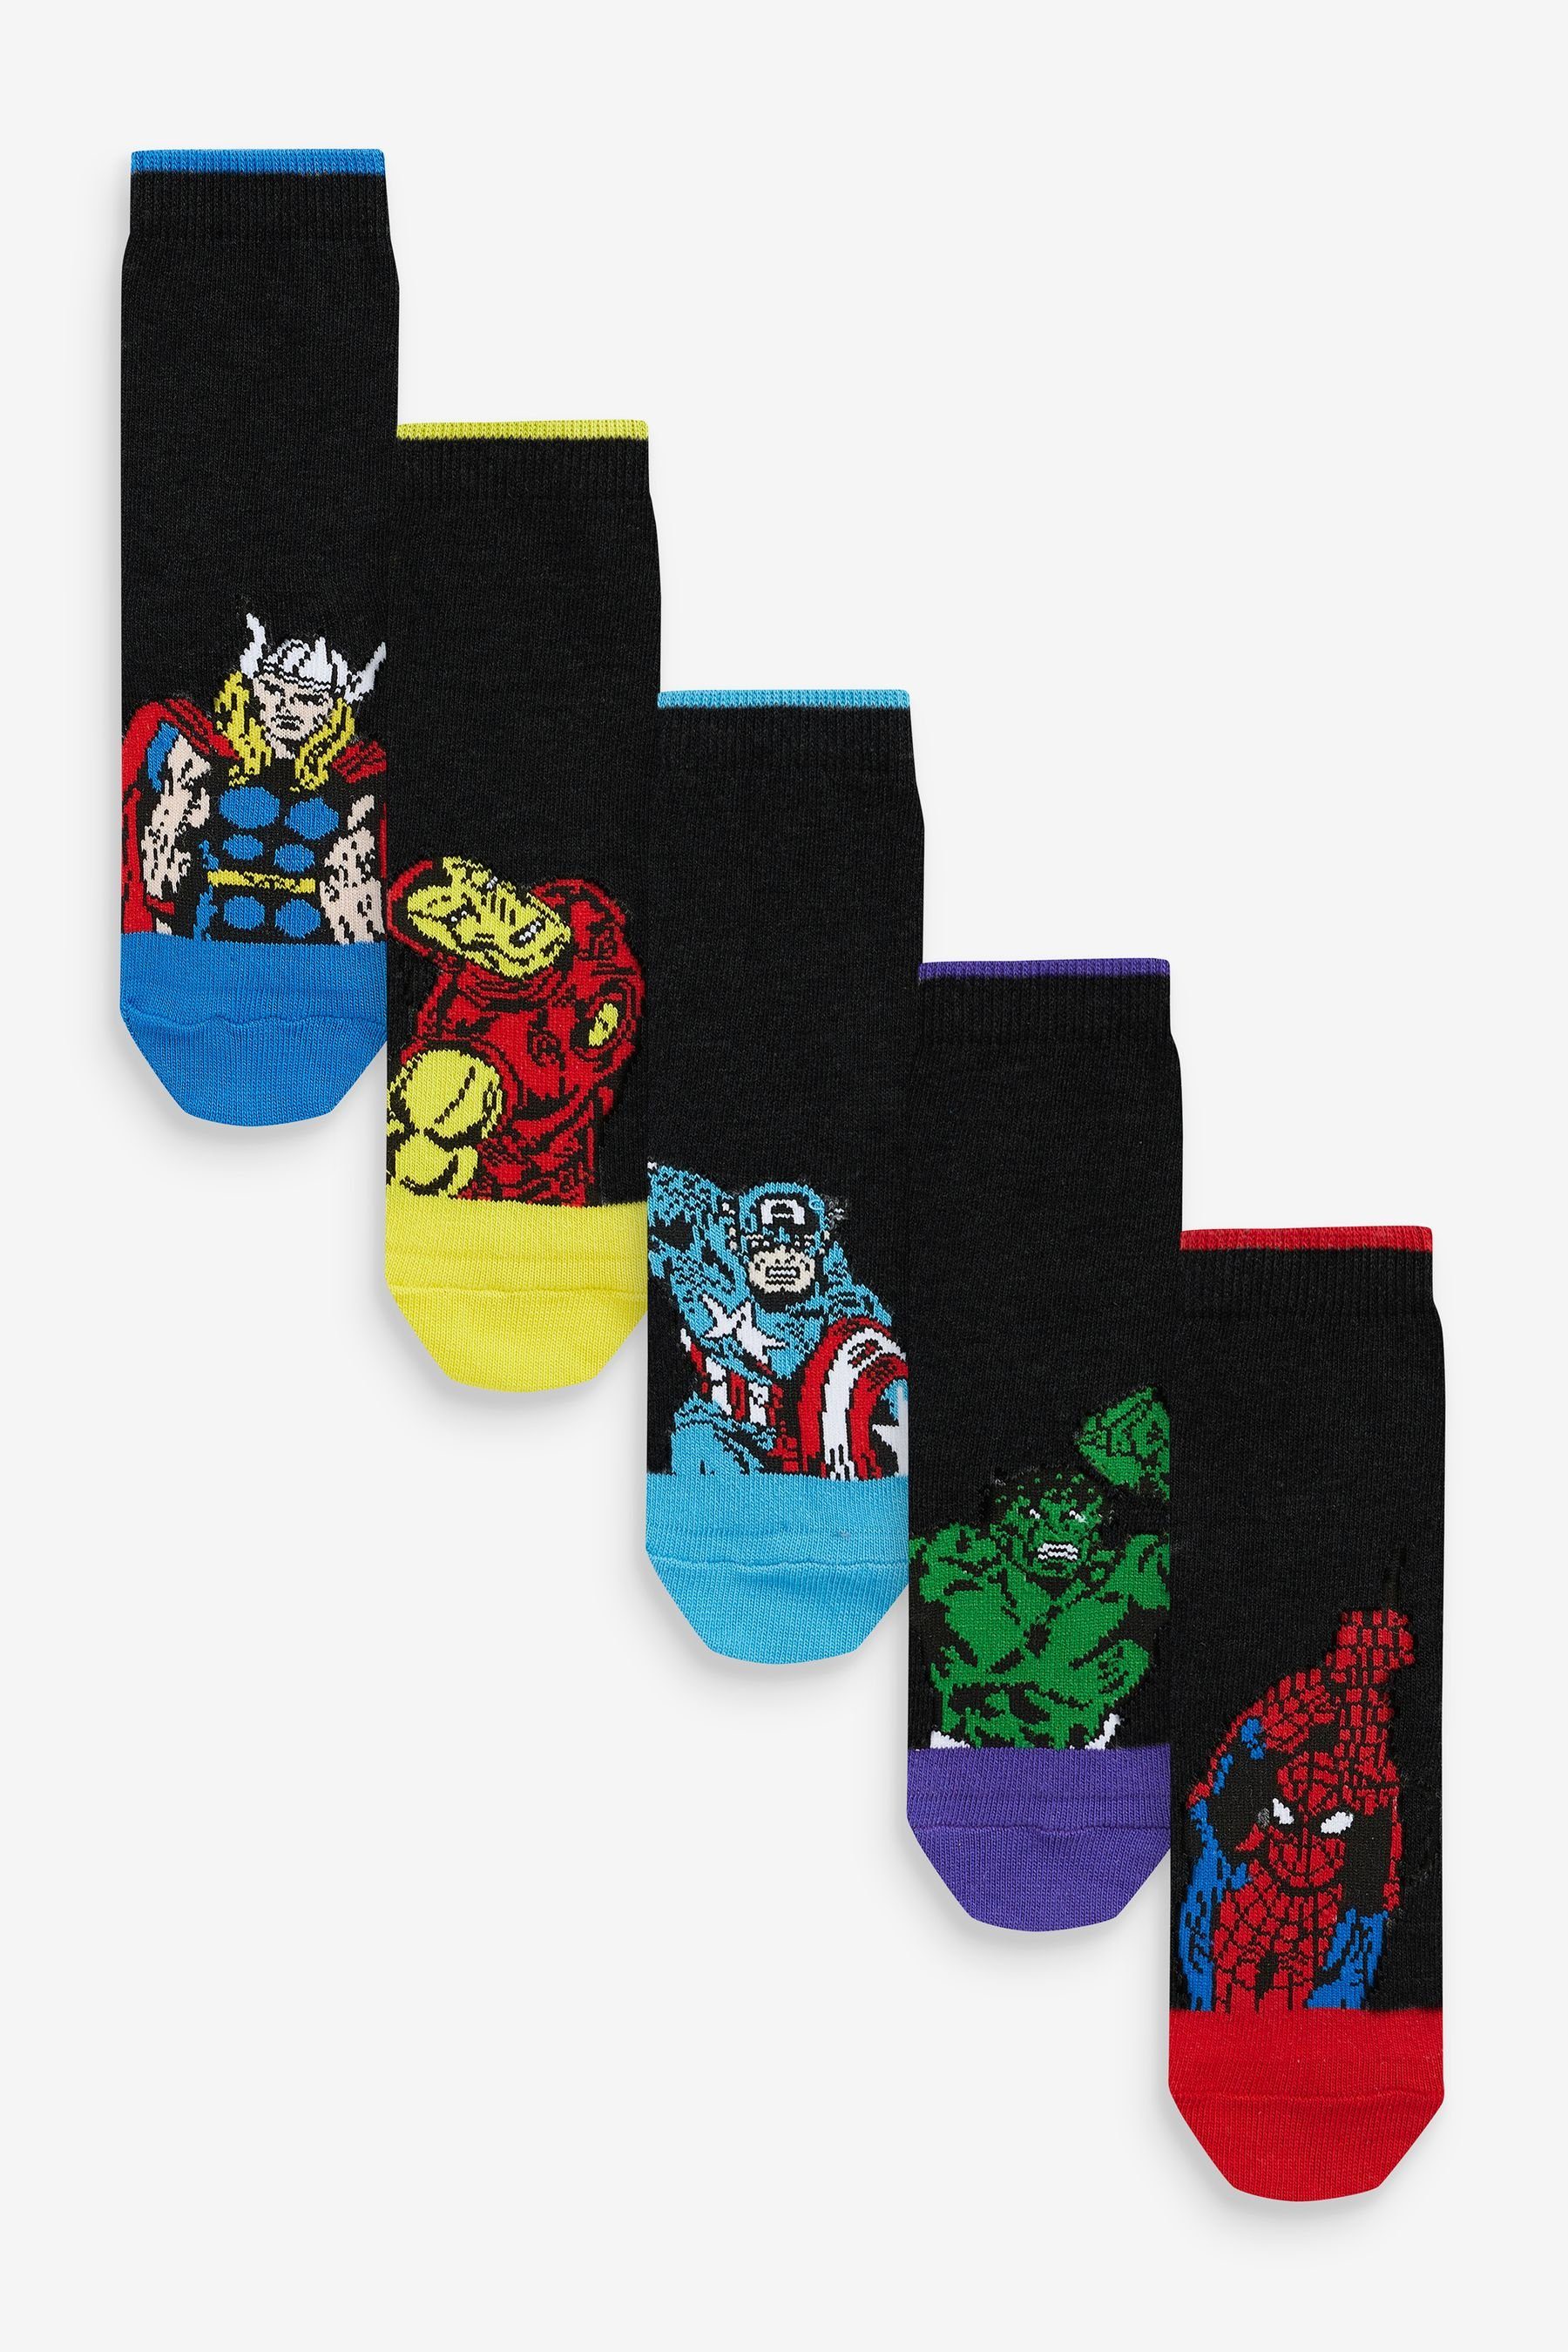 Next Kurzsocken Baumwollanteil, hohem (1-Paar) 5er-Pack Avengers Socken Black Marvel mit